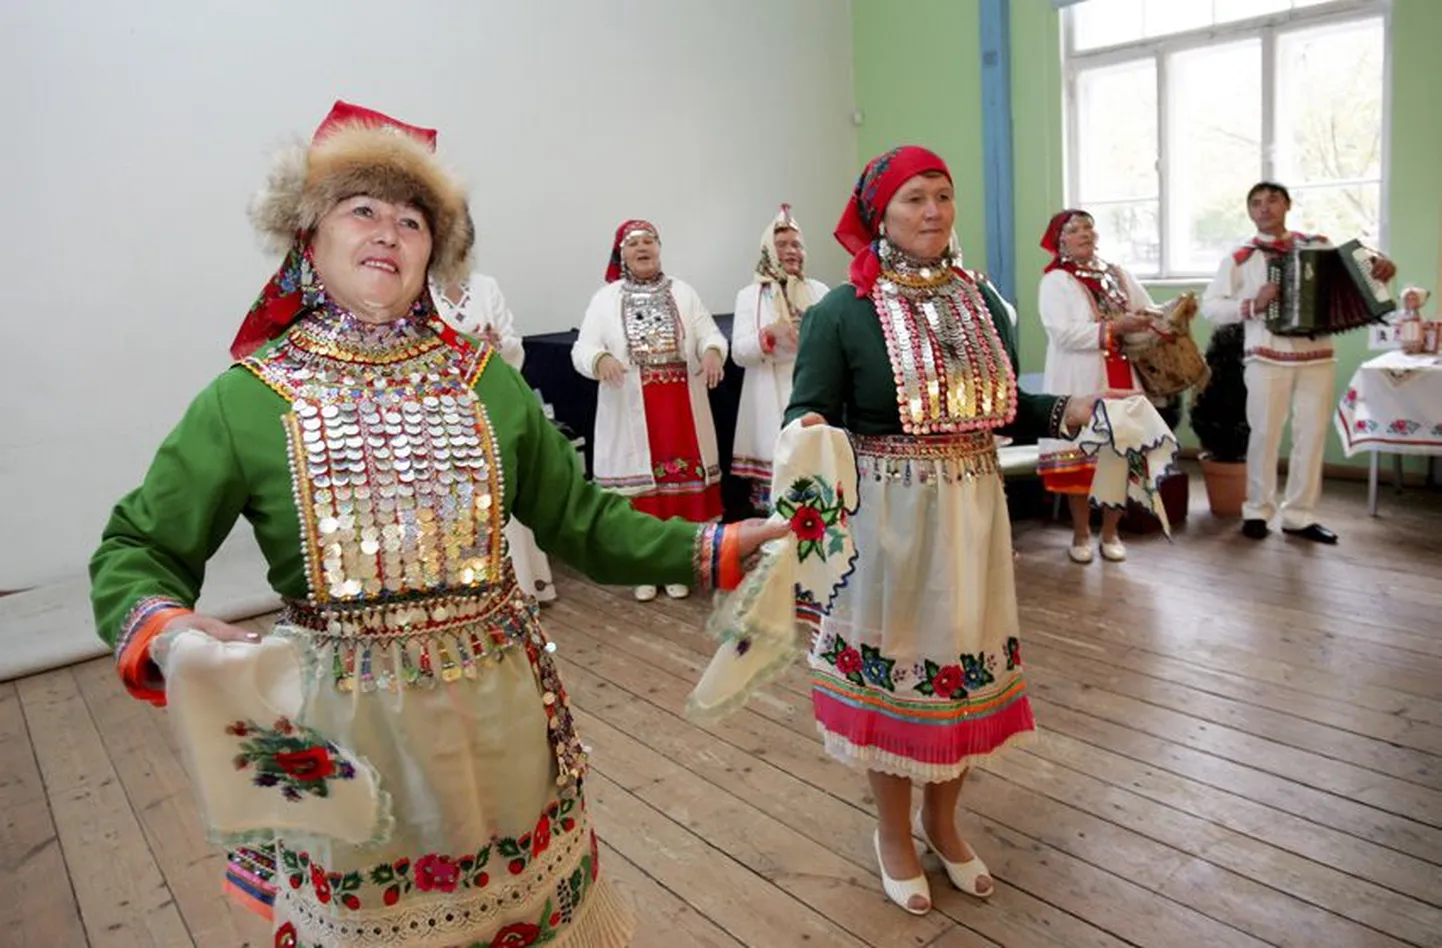 Lauldes ja tantsides avas Kuvan Kengež vaatajatele-kuulajatele maride hinge. Nagu selgus, on selles paljugi ühist eestlastega, ollakse ikkagi hõimurahvad.